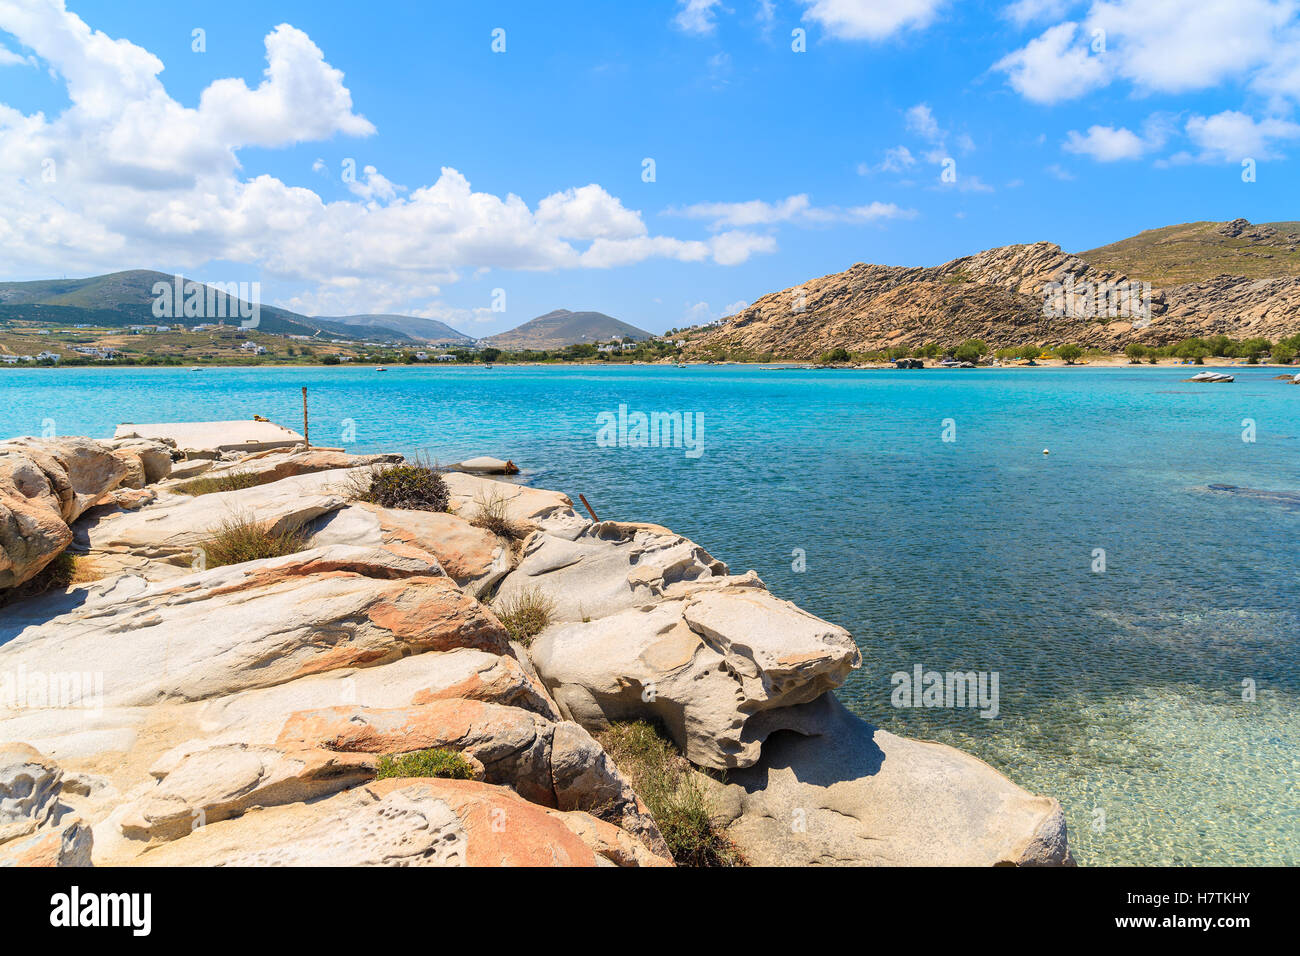 Clair comme de l'eau de mer turquoise de Kolymbithres beach, l'île de Paros, Grèce Banque D'Images